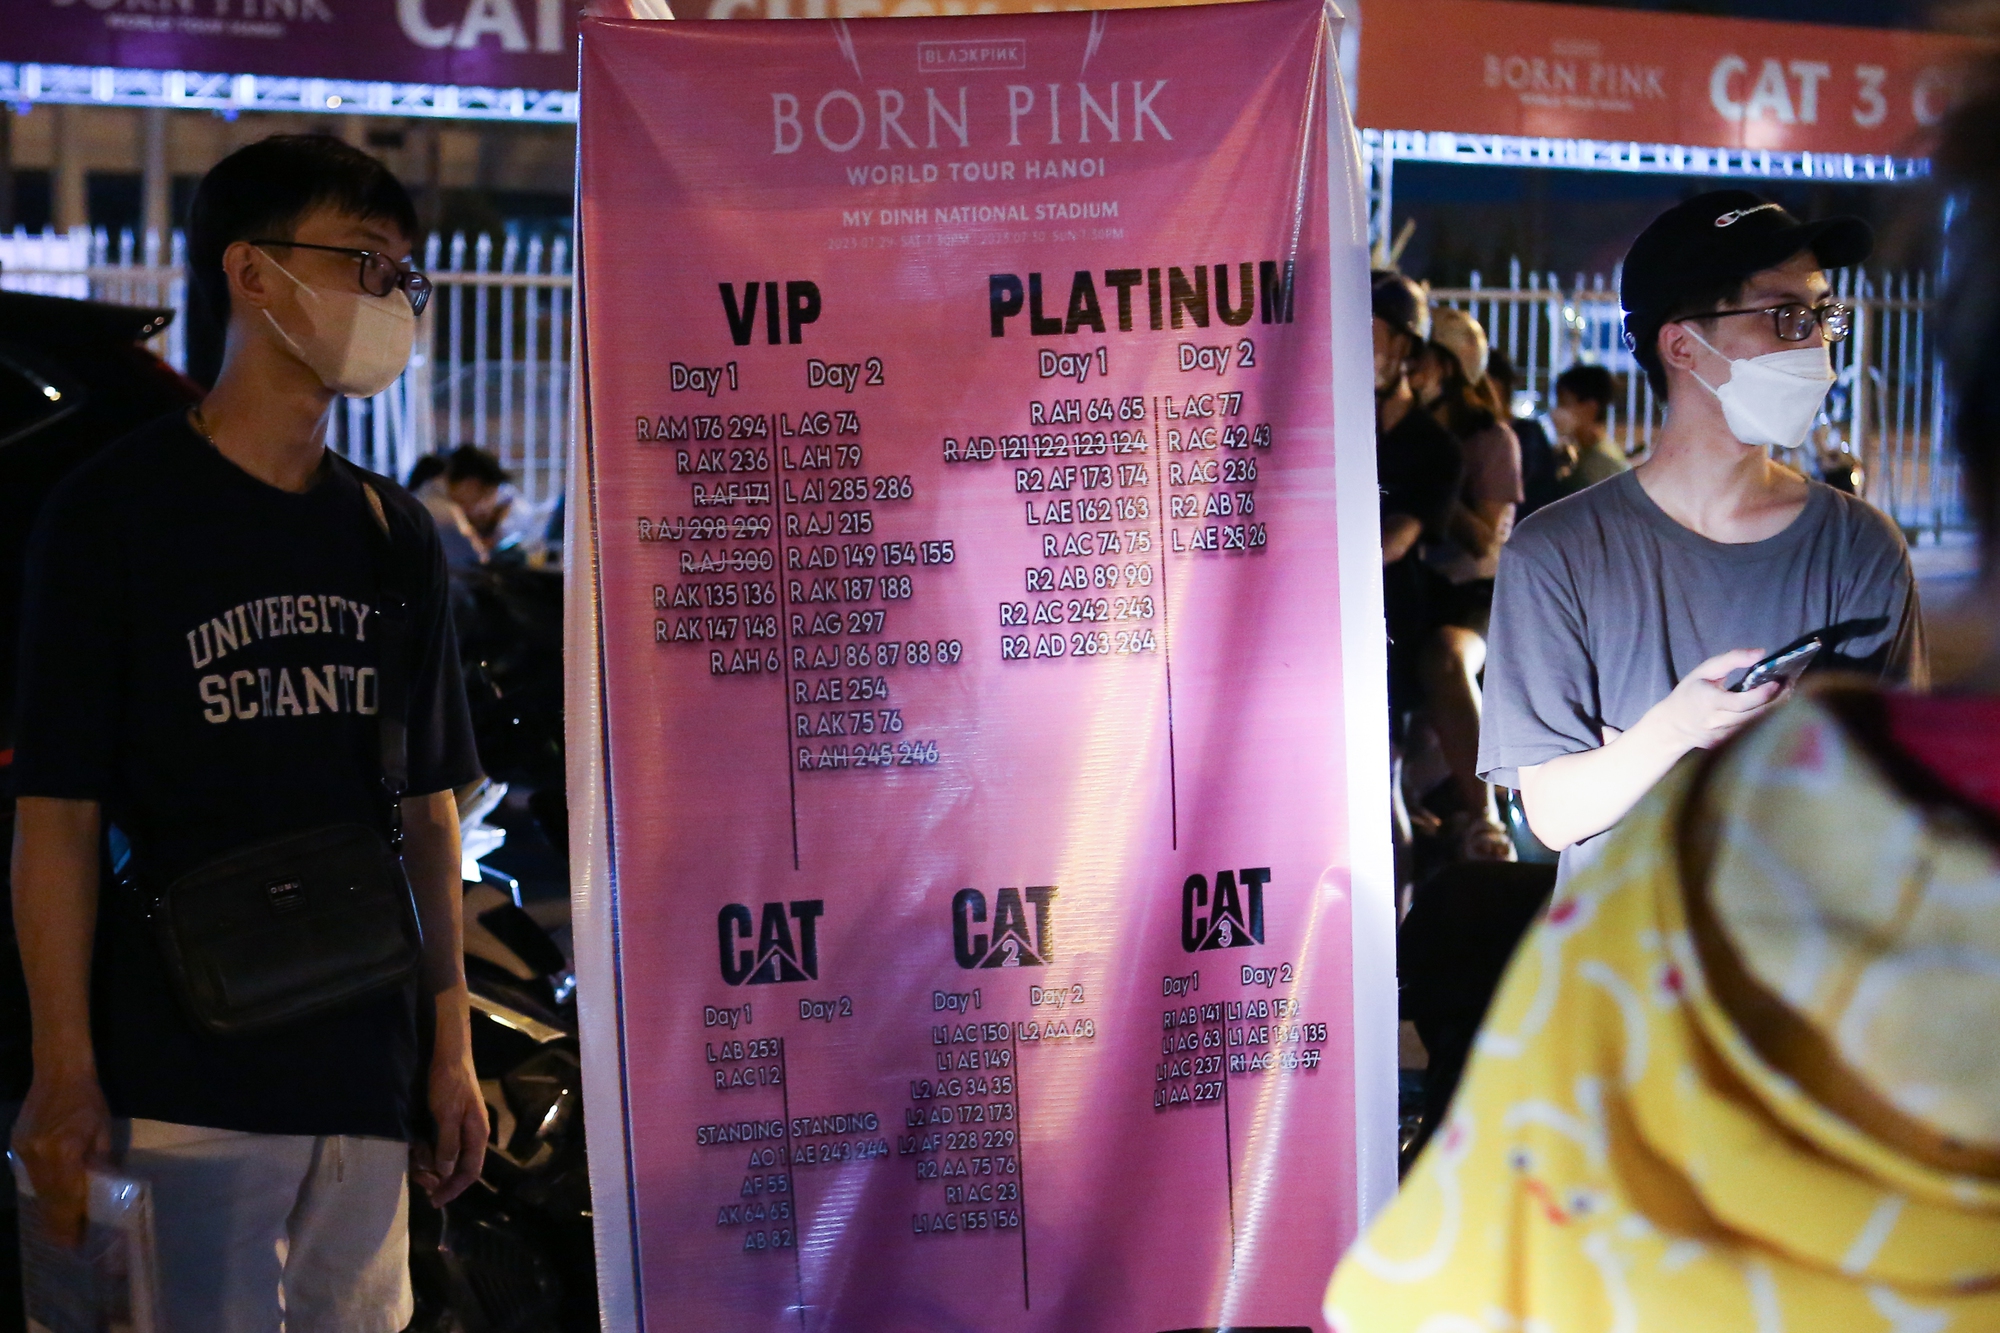 Sát show diễn Blackpink, phe vé vẫn 'méo mặt' dù 'đại hạ giá' - Ảnh 2.